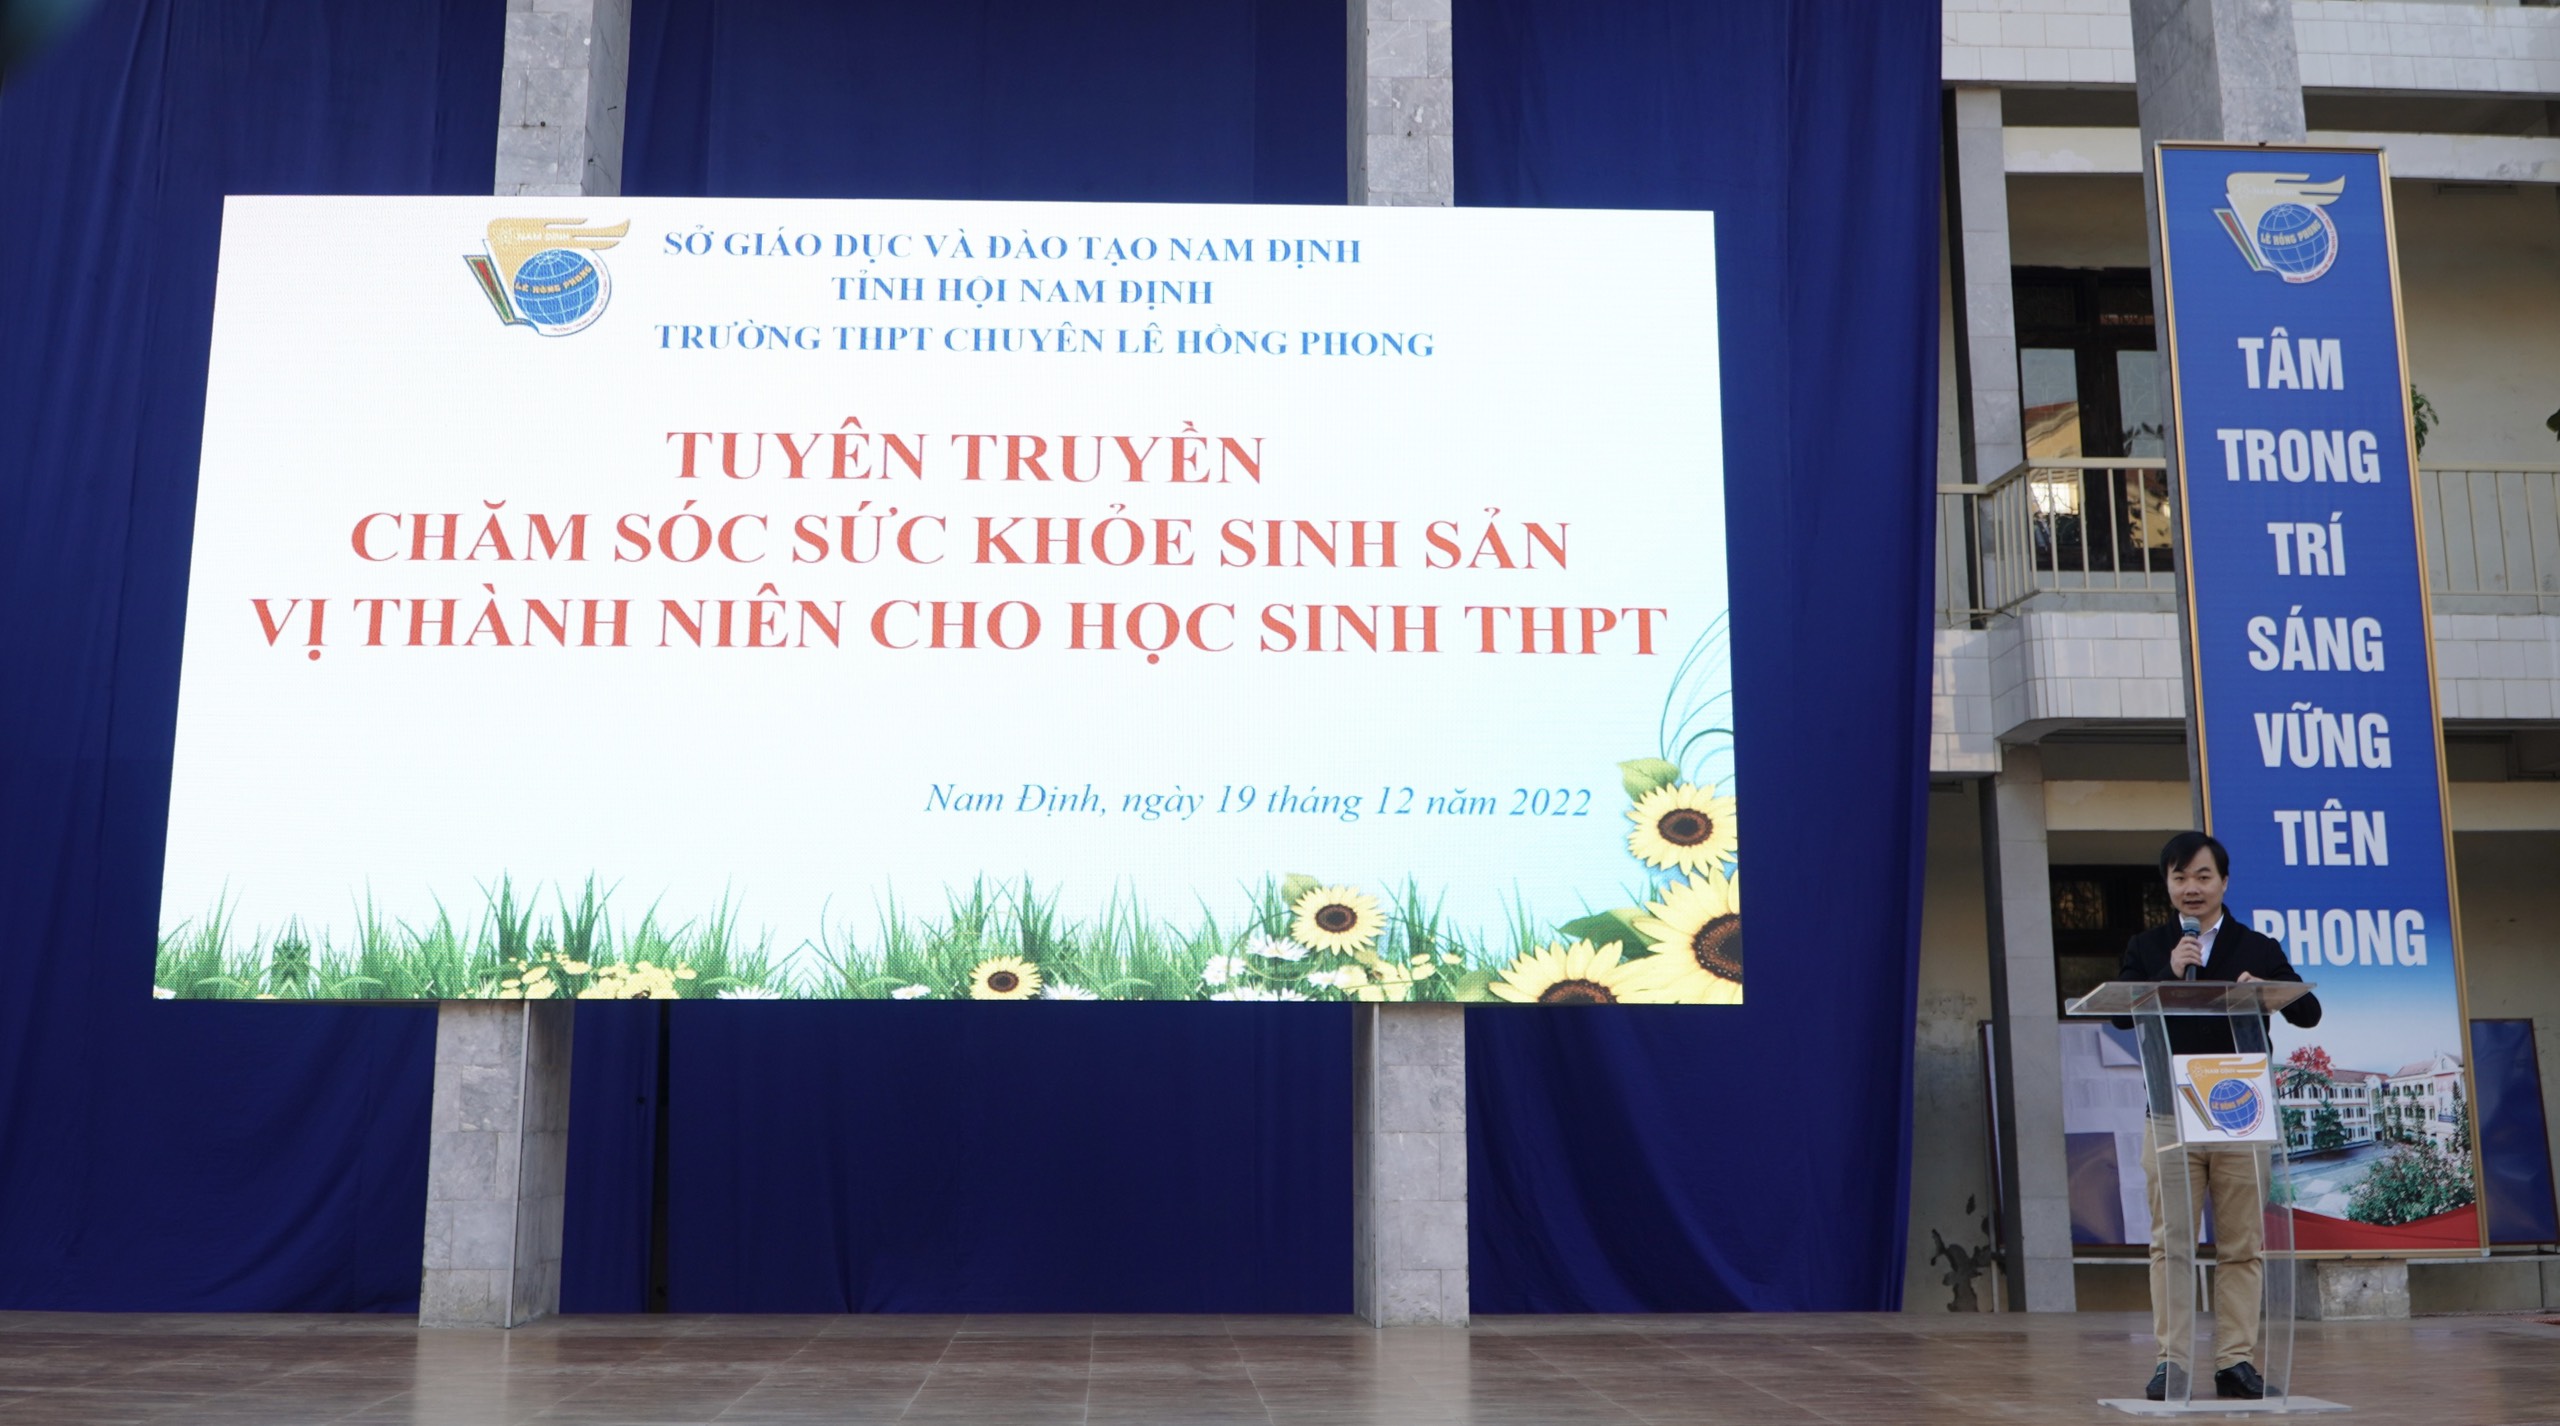 Trường THPT chuyên Lê Hồng Phong tổ chức hoạt động tuyên truyền chăm sóc sức khỏe vị thành niên cho học sinh